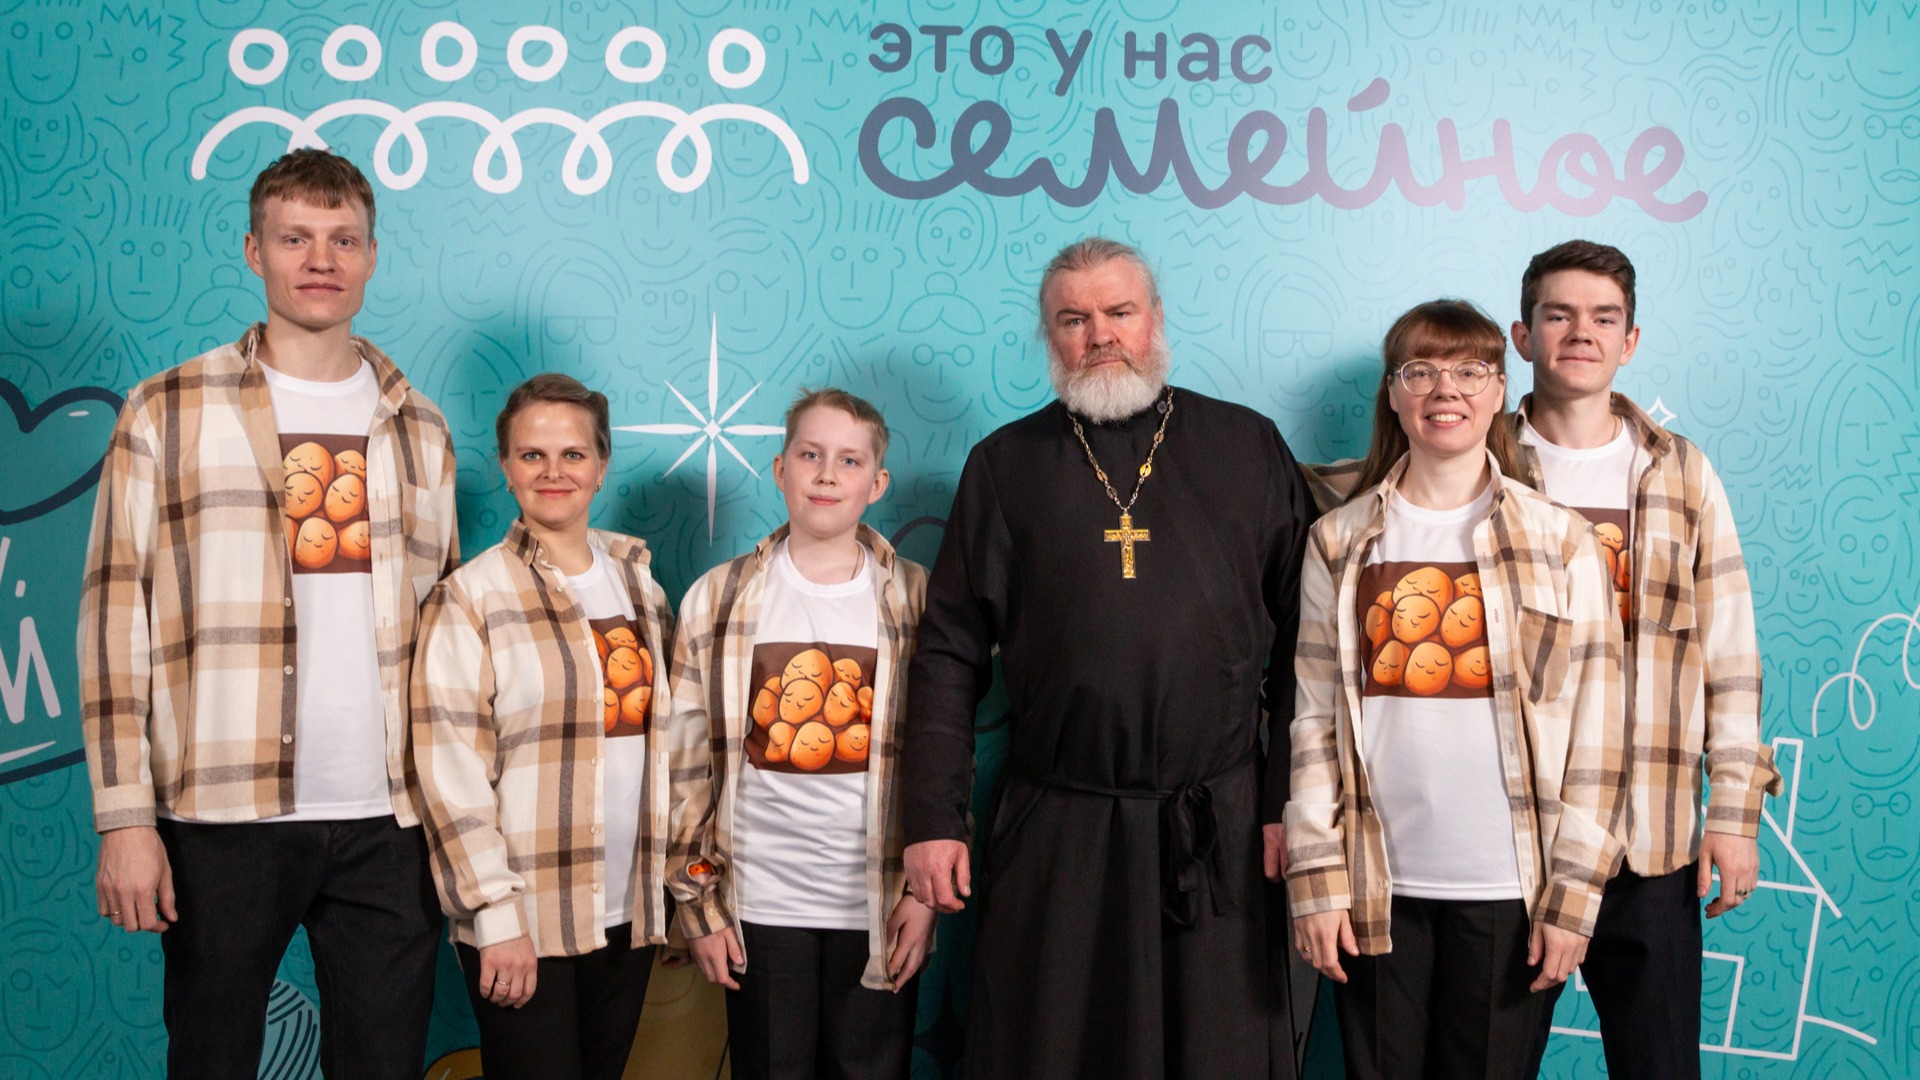 Семья Глебец, Макаровых из Челябинской области: конкурс «Это у нас семейное» – это про любовь, ценности и традиции 